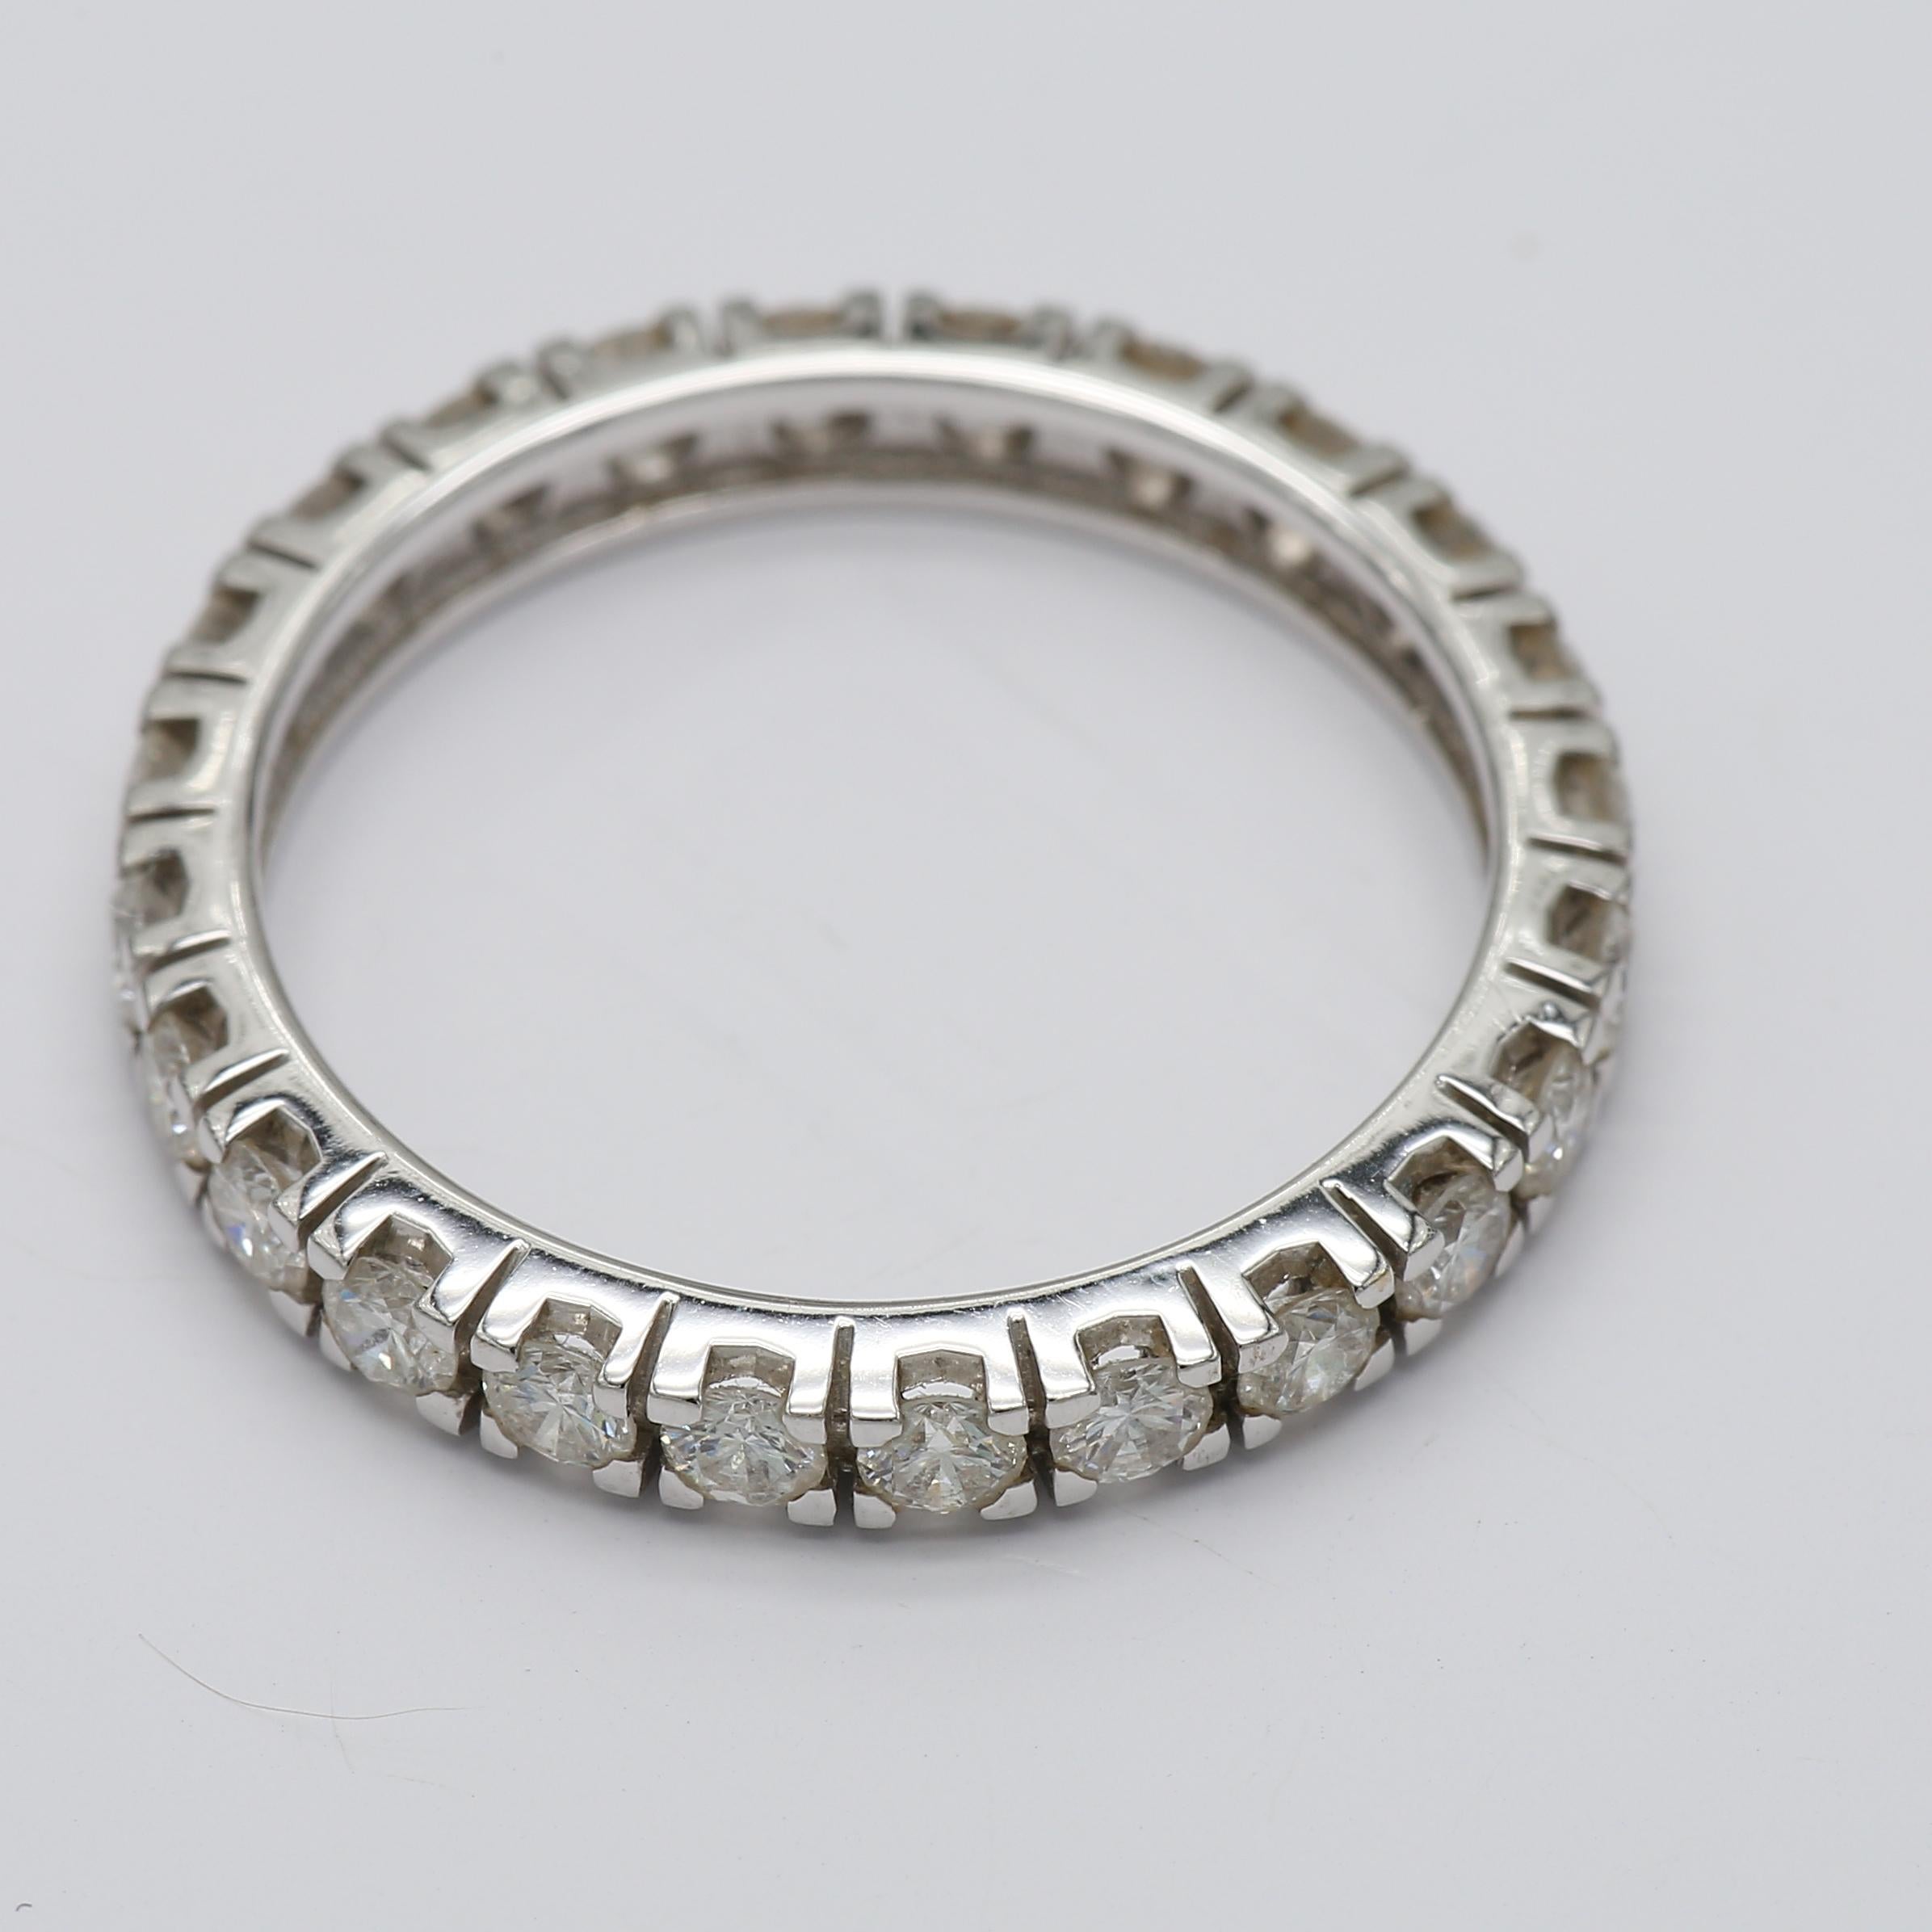 Zartes Eternity-Band mit 24 runden Diamanten (Gesamtkaratgewicht 1,90) in Weißgold. Erweitern Sie Ihre Schmucksammlung mit diesem klassischen Ring oder verschenken Sie ihn an Ihre Liebsten. Dieser klassische Diamantring für die Ewigkeit wird Ihnen